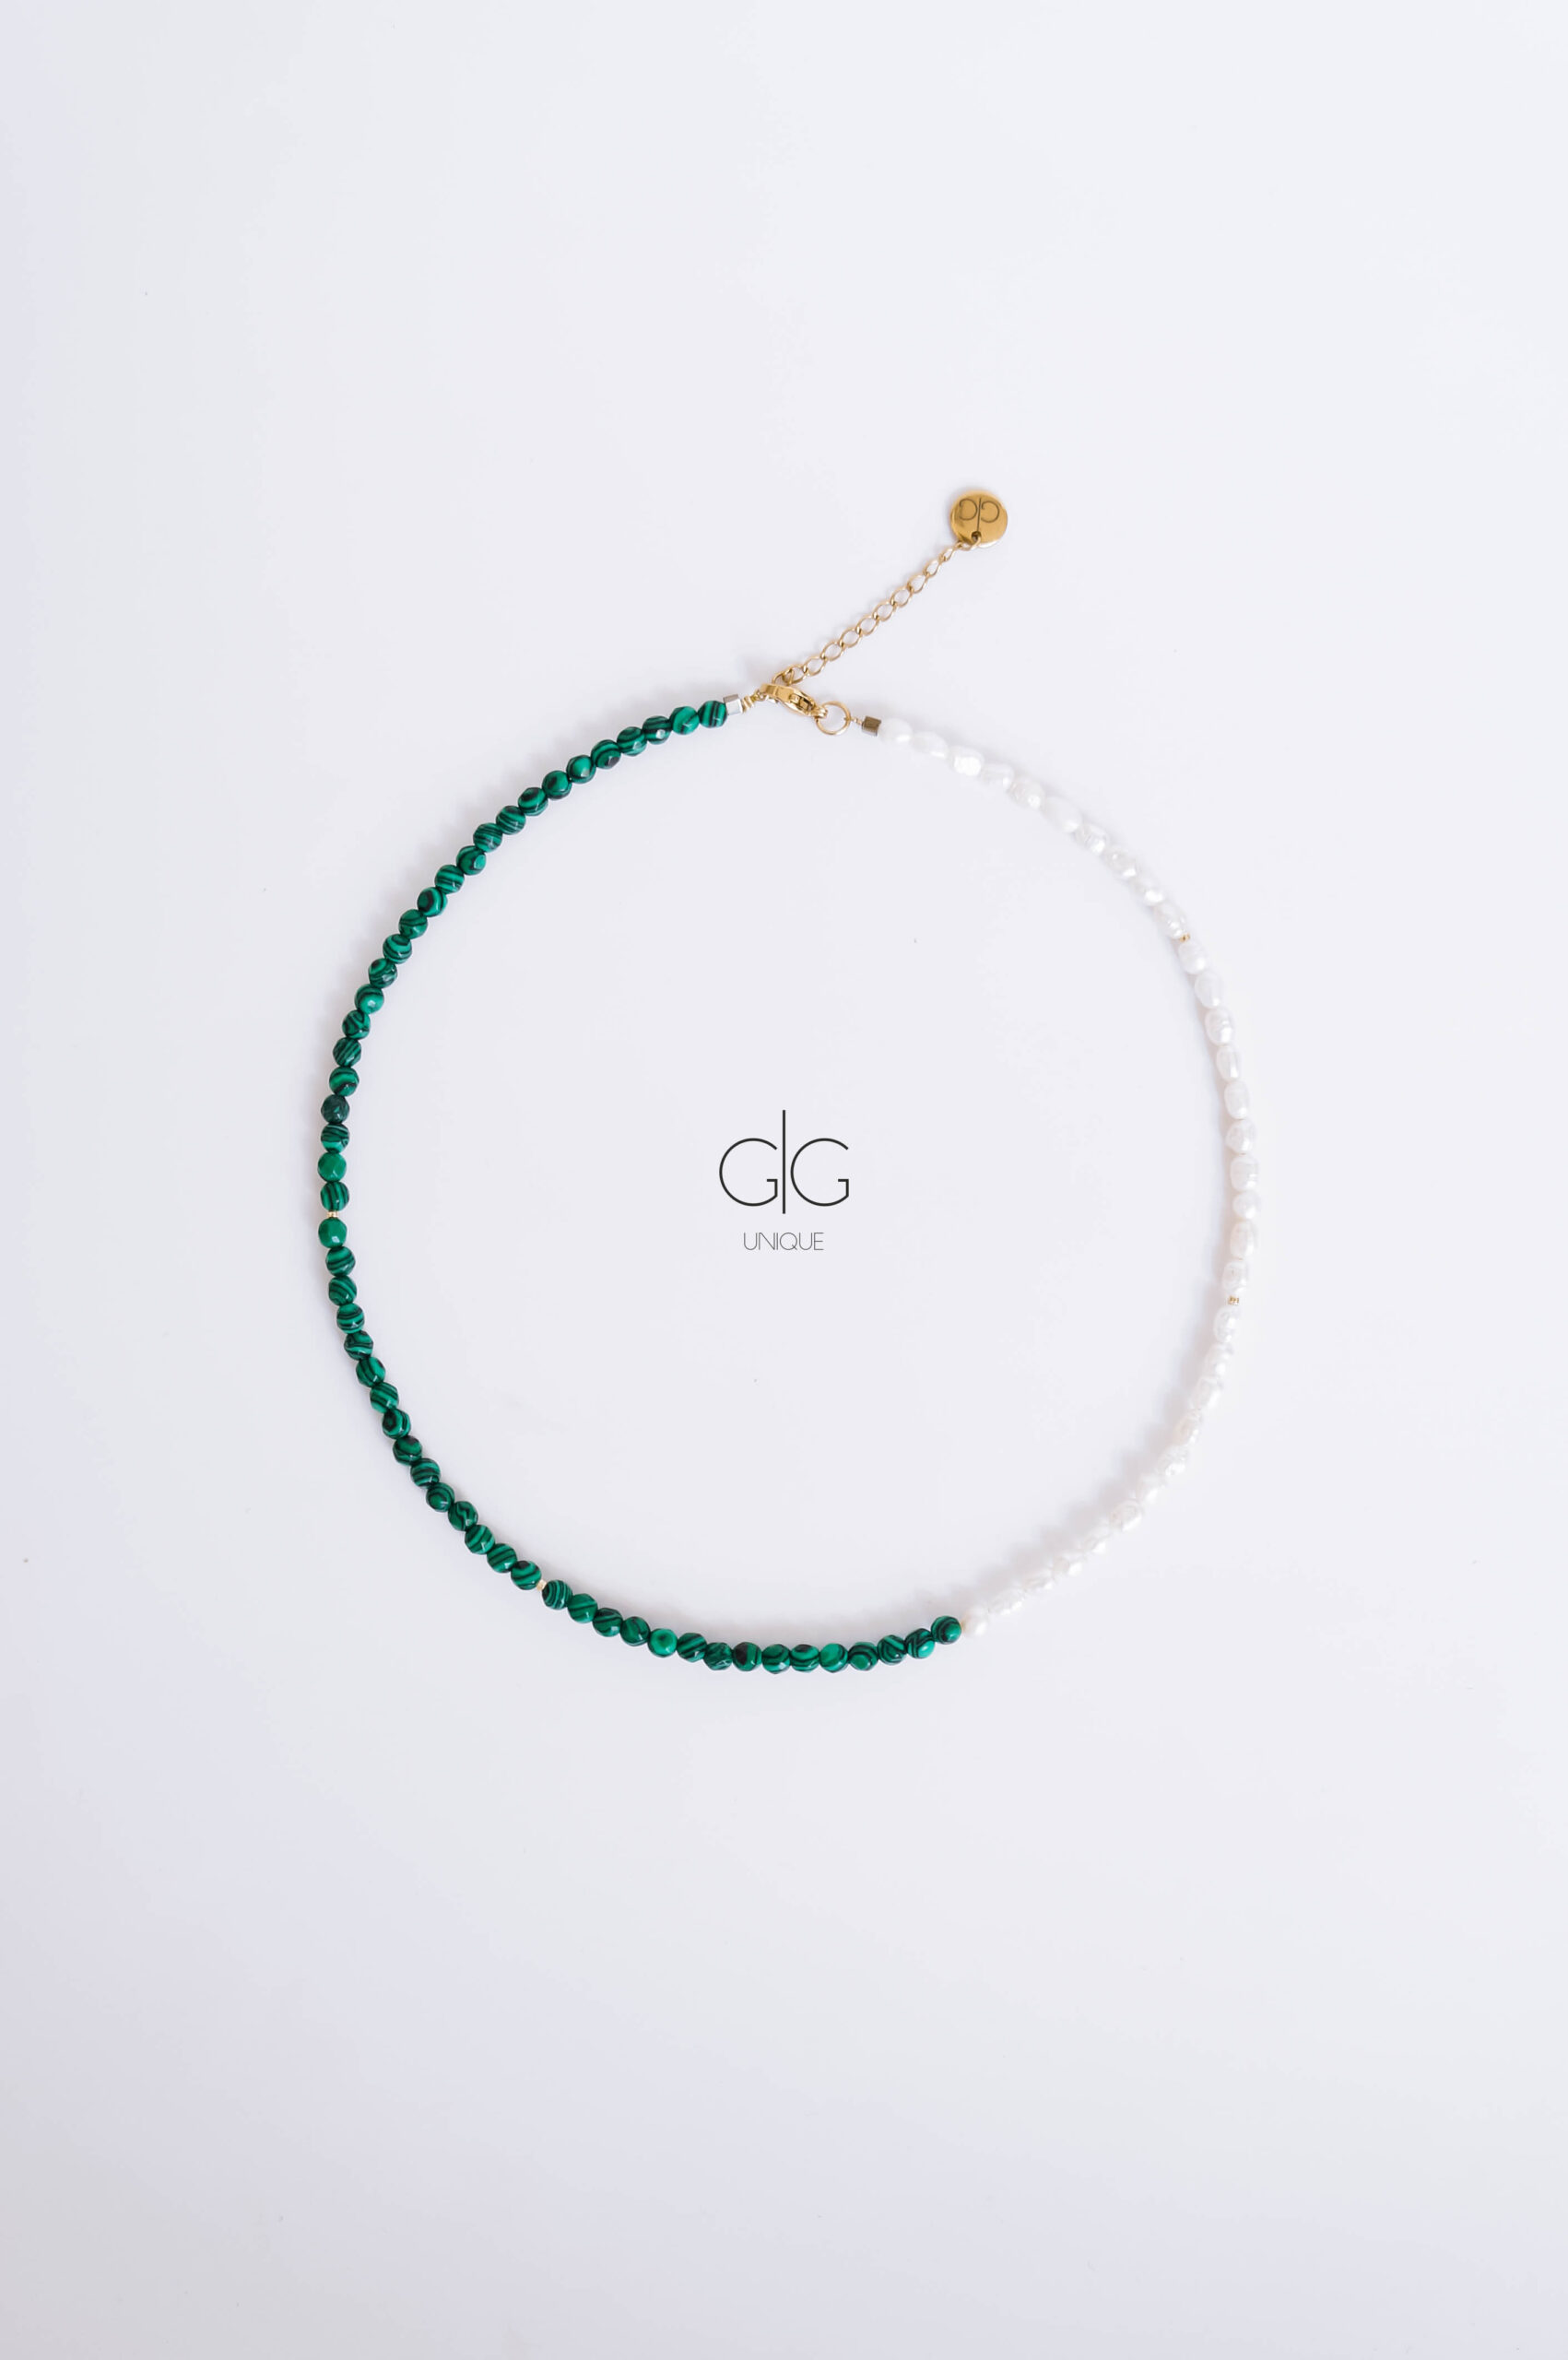 Pearl and green color malachite stone necklace -GG Unique